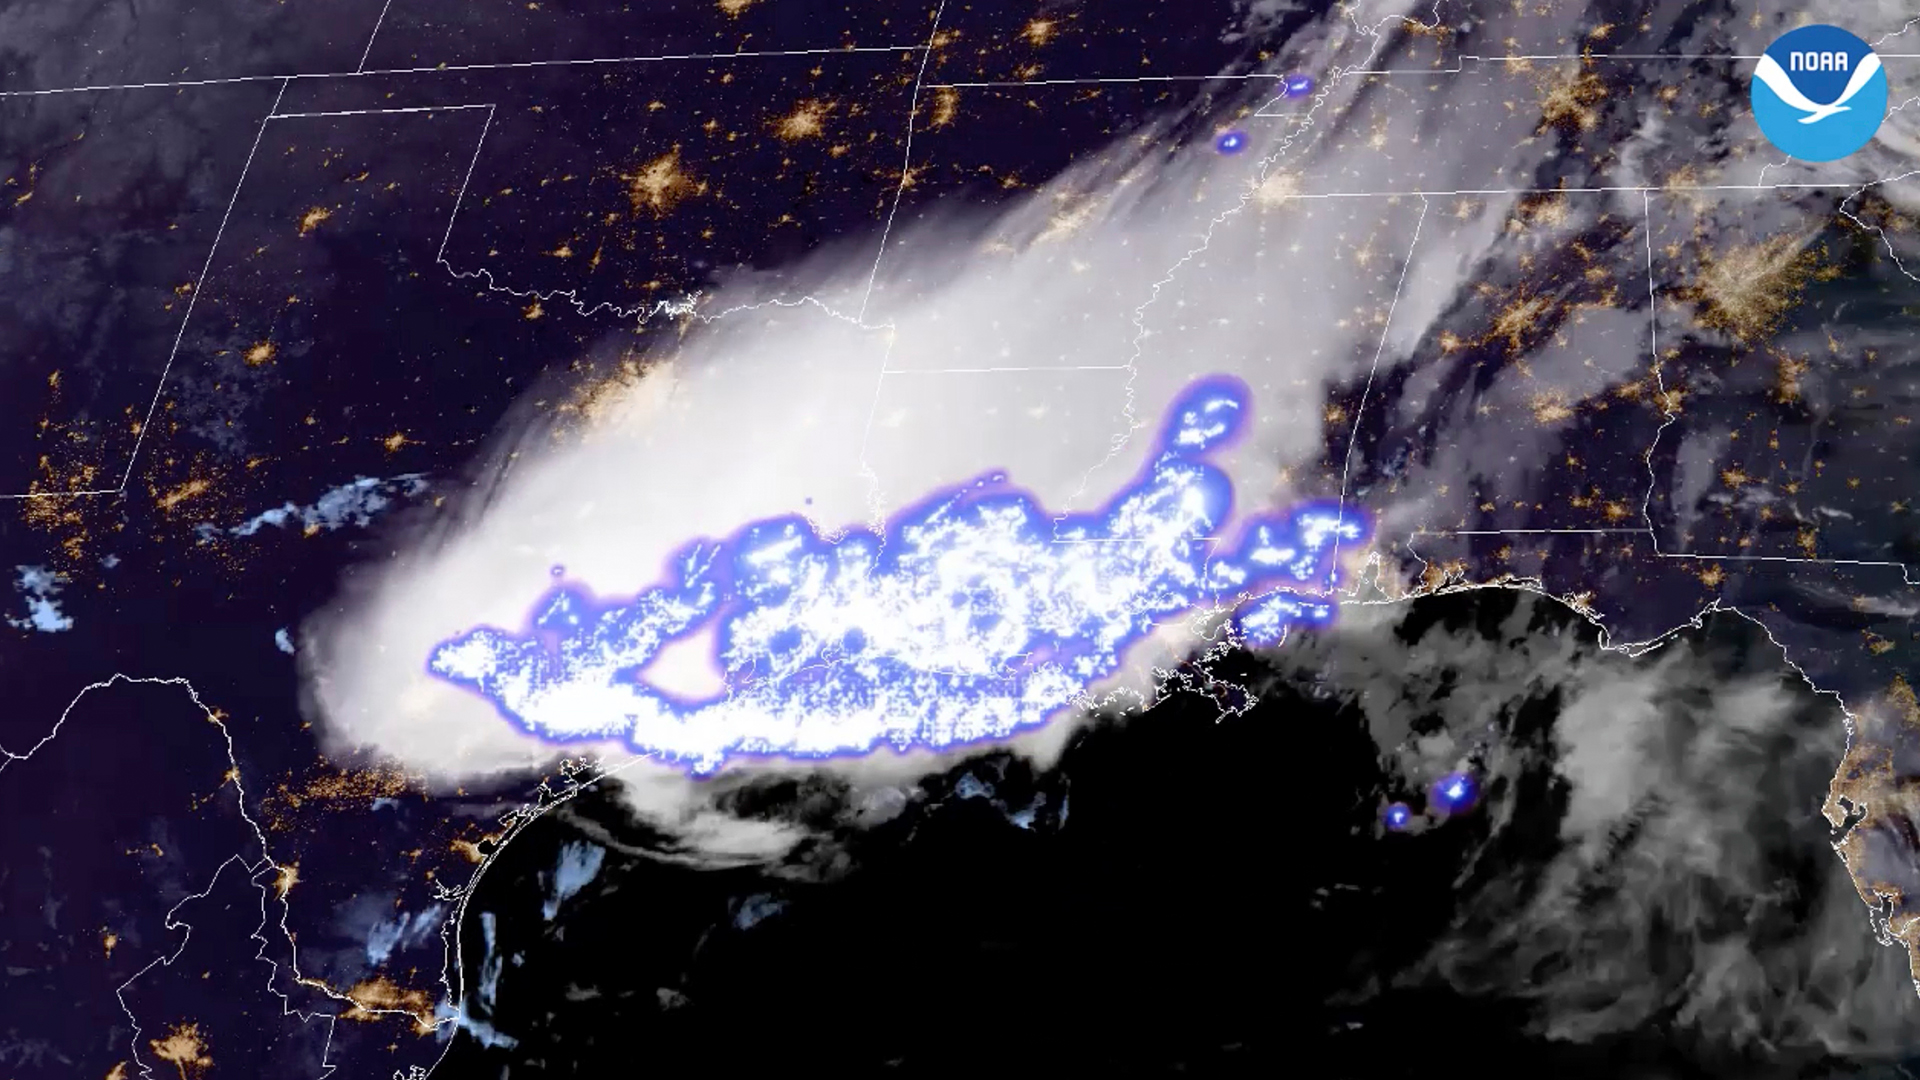 Das National Oceanic and Atmospheric Administration zur Verfügung gestellte Satellitenbild zeigt ein Gewitterkomplex, in dem am 29. April 2020 über Teilen der südlichen Vereinigten Staaten mit rund 768 Kilometern der längste Einzelblitz über eine horizontale Strecke aufgezeichnet wurde. | Uncredited/NOAA via AP/dpa